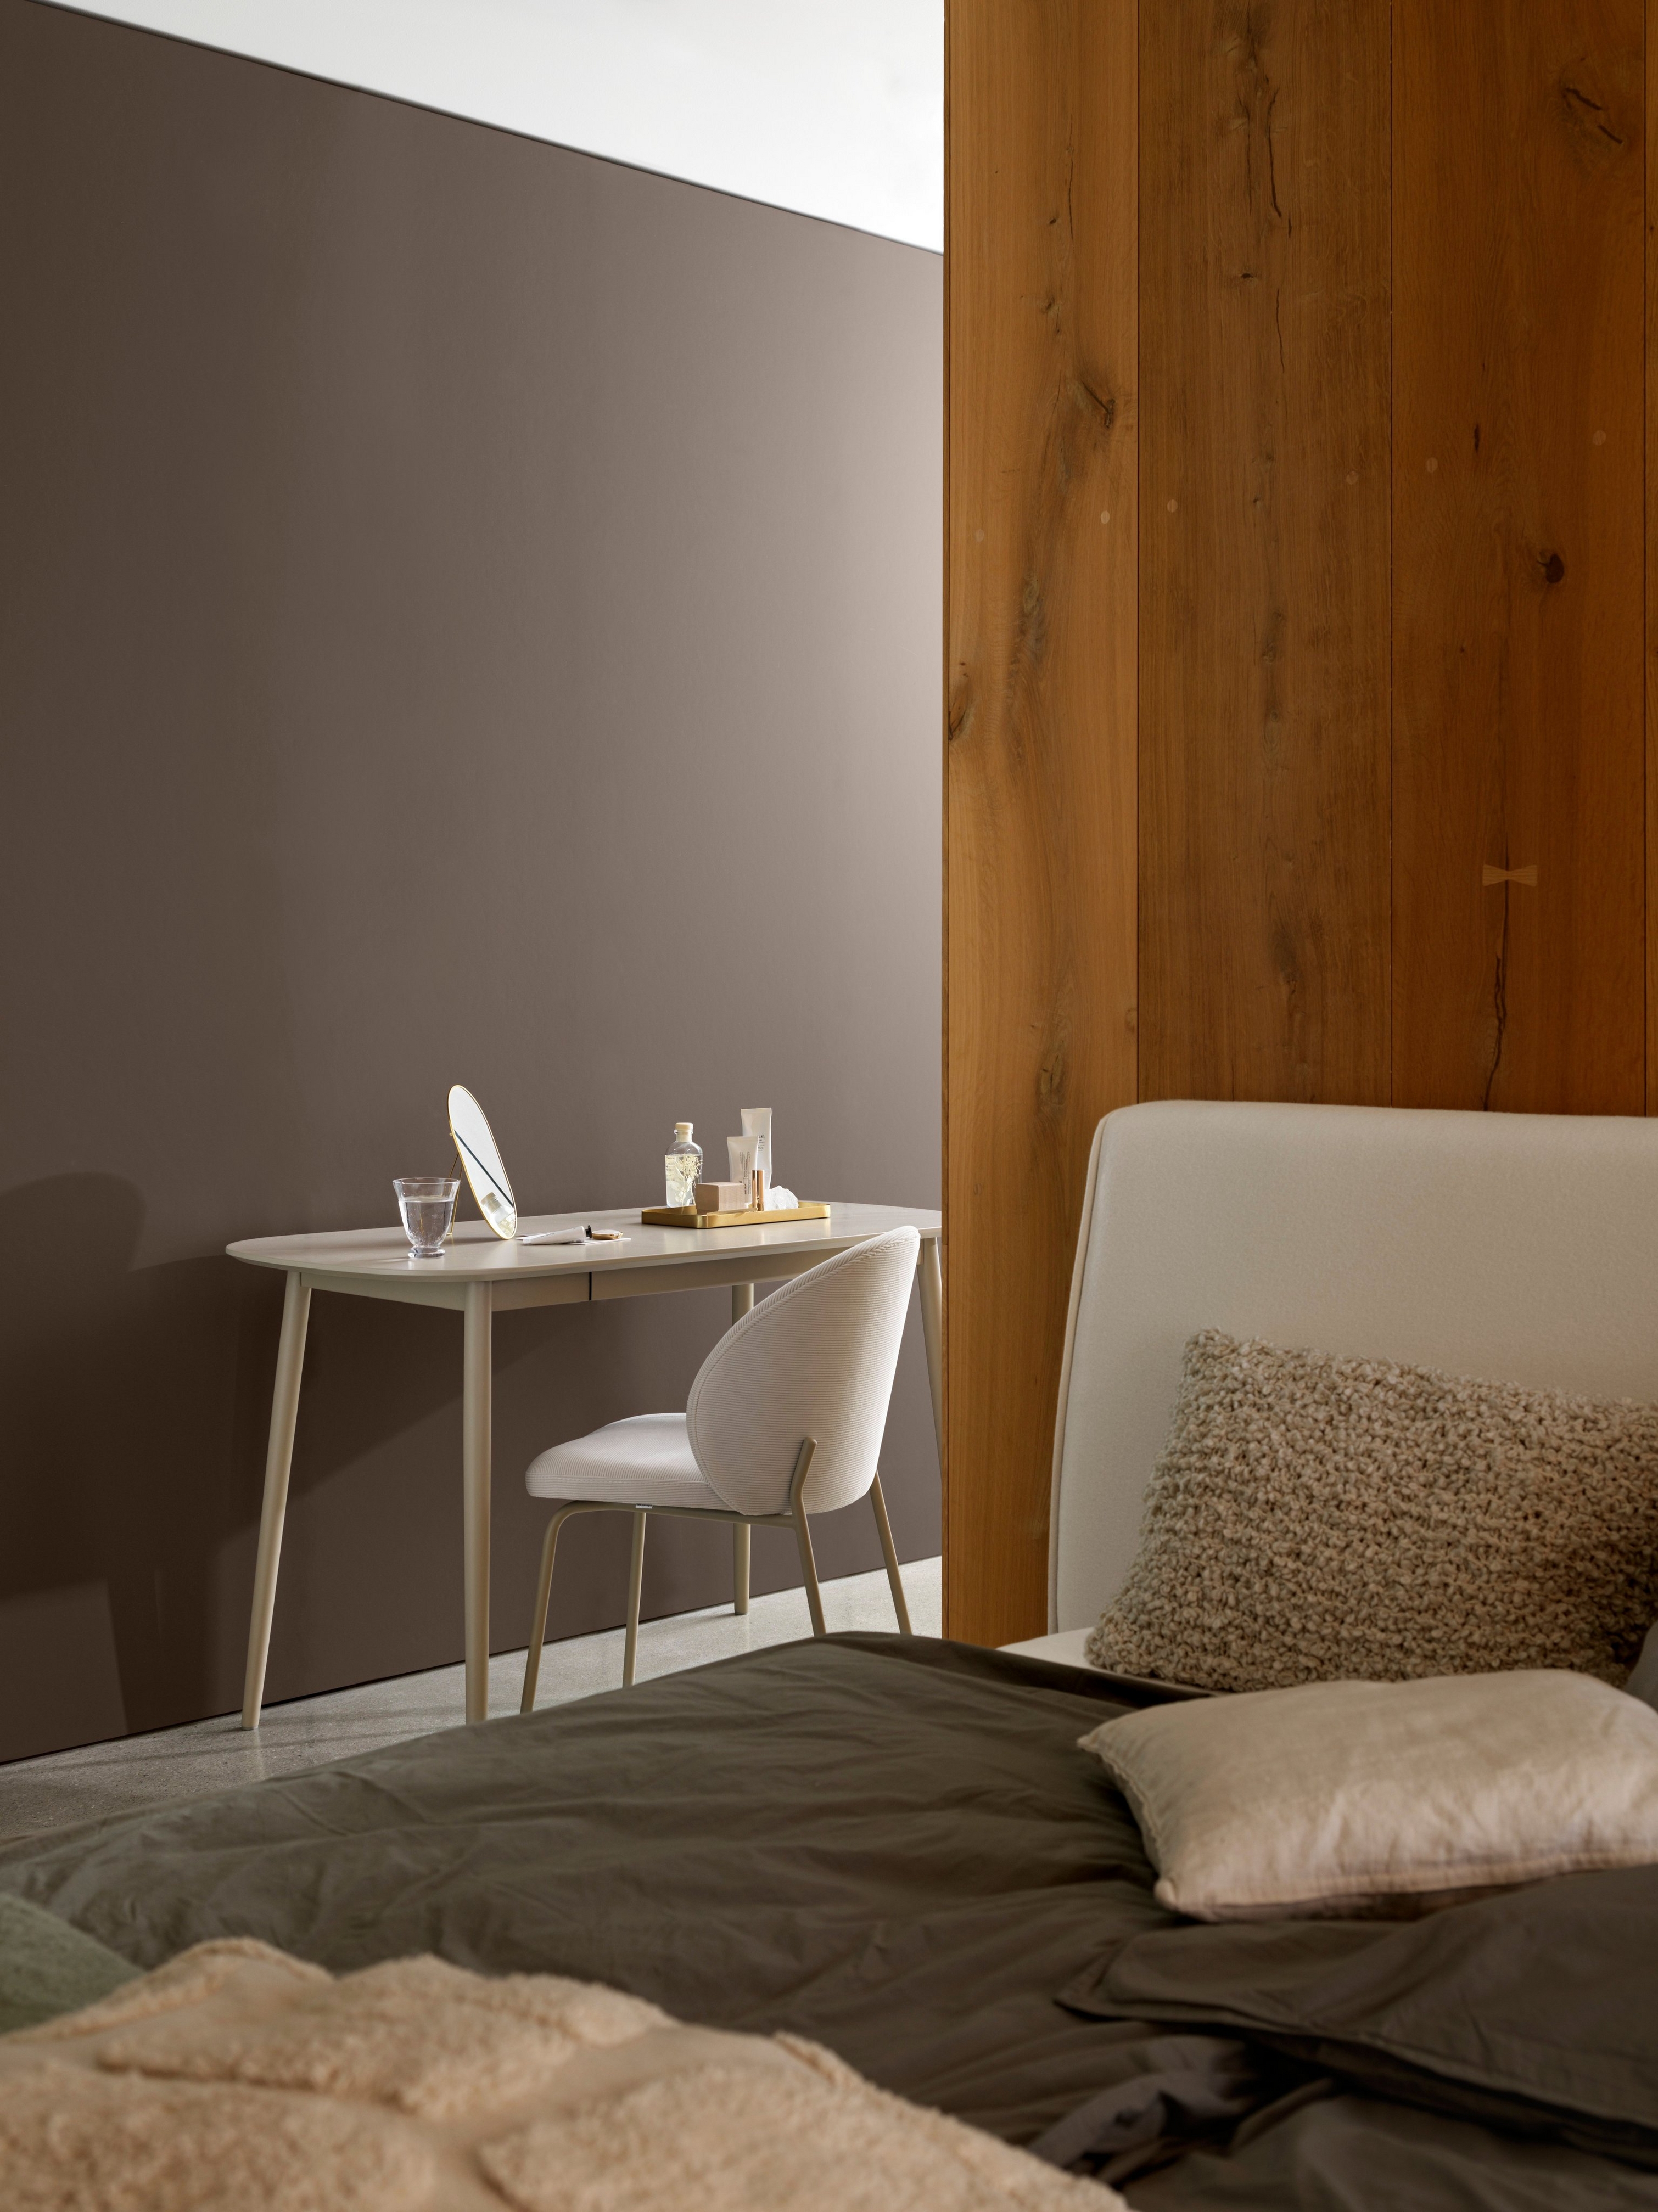 Makuuhuoneen nurkkaus, jossa on yksinkertainen työpöytä, tuoli ja mukavat vuodevaatteet puupaneelin vieressä.